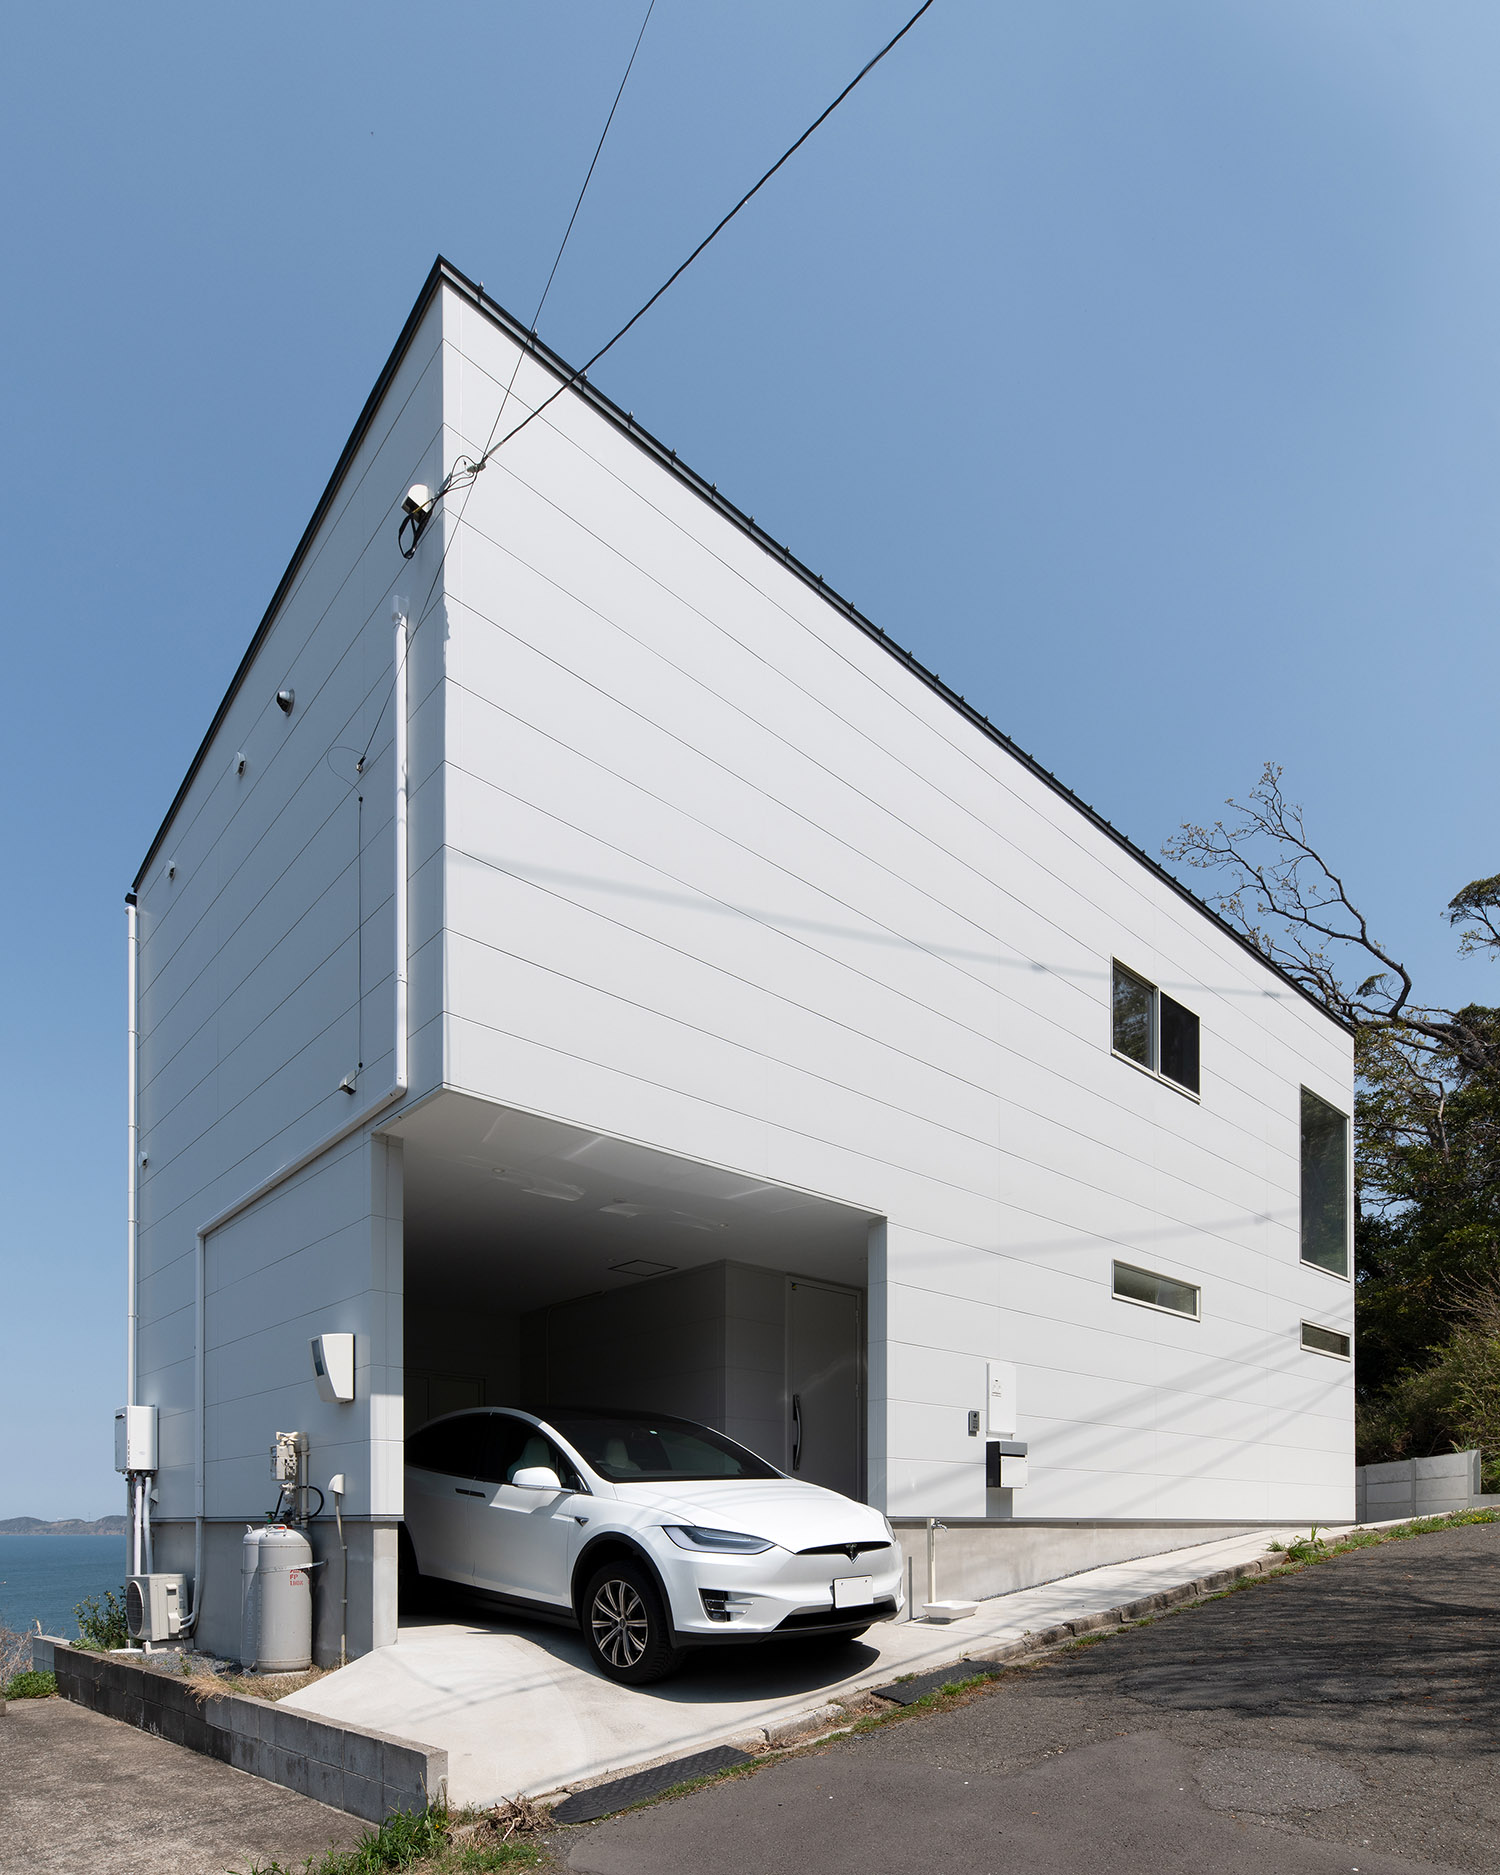 インナーガレージがある海辺に建つ白い外壁の家・デザイン住宅